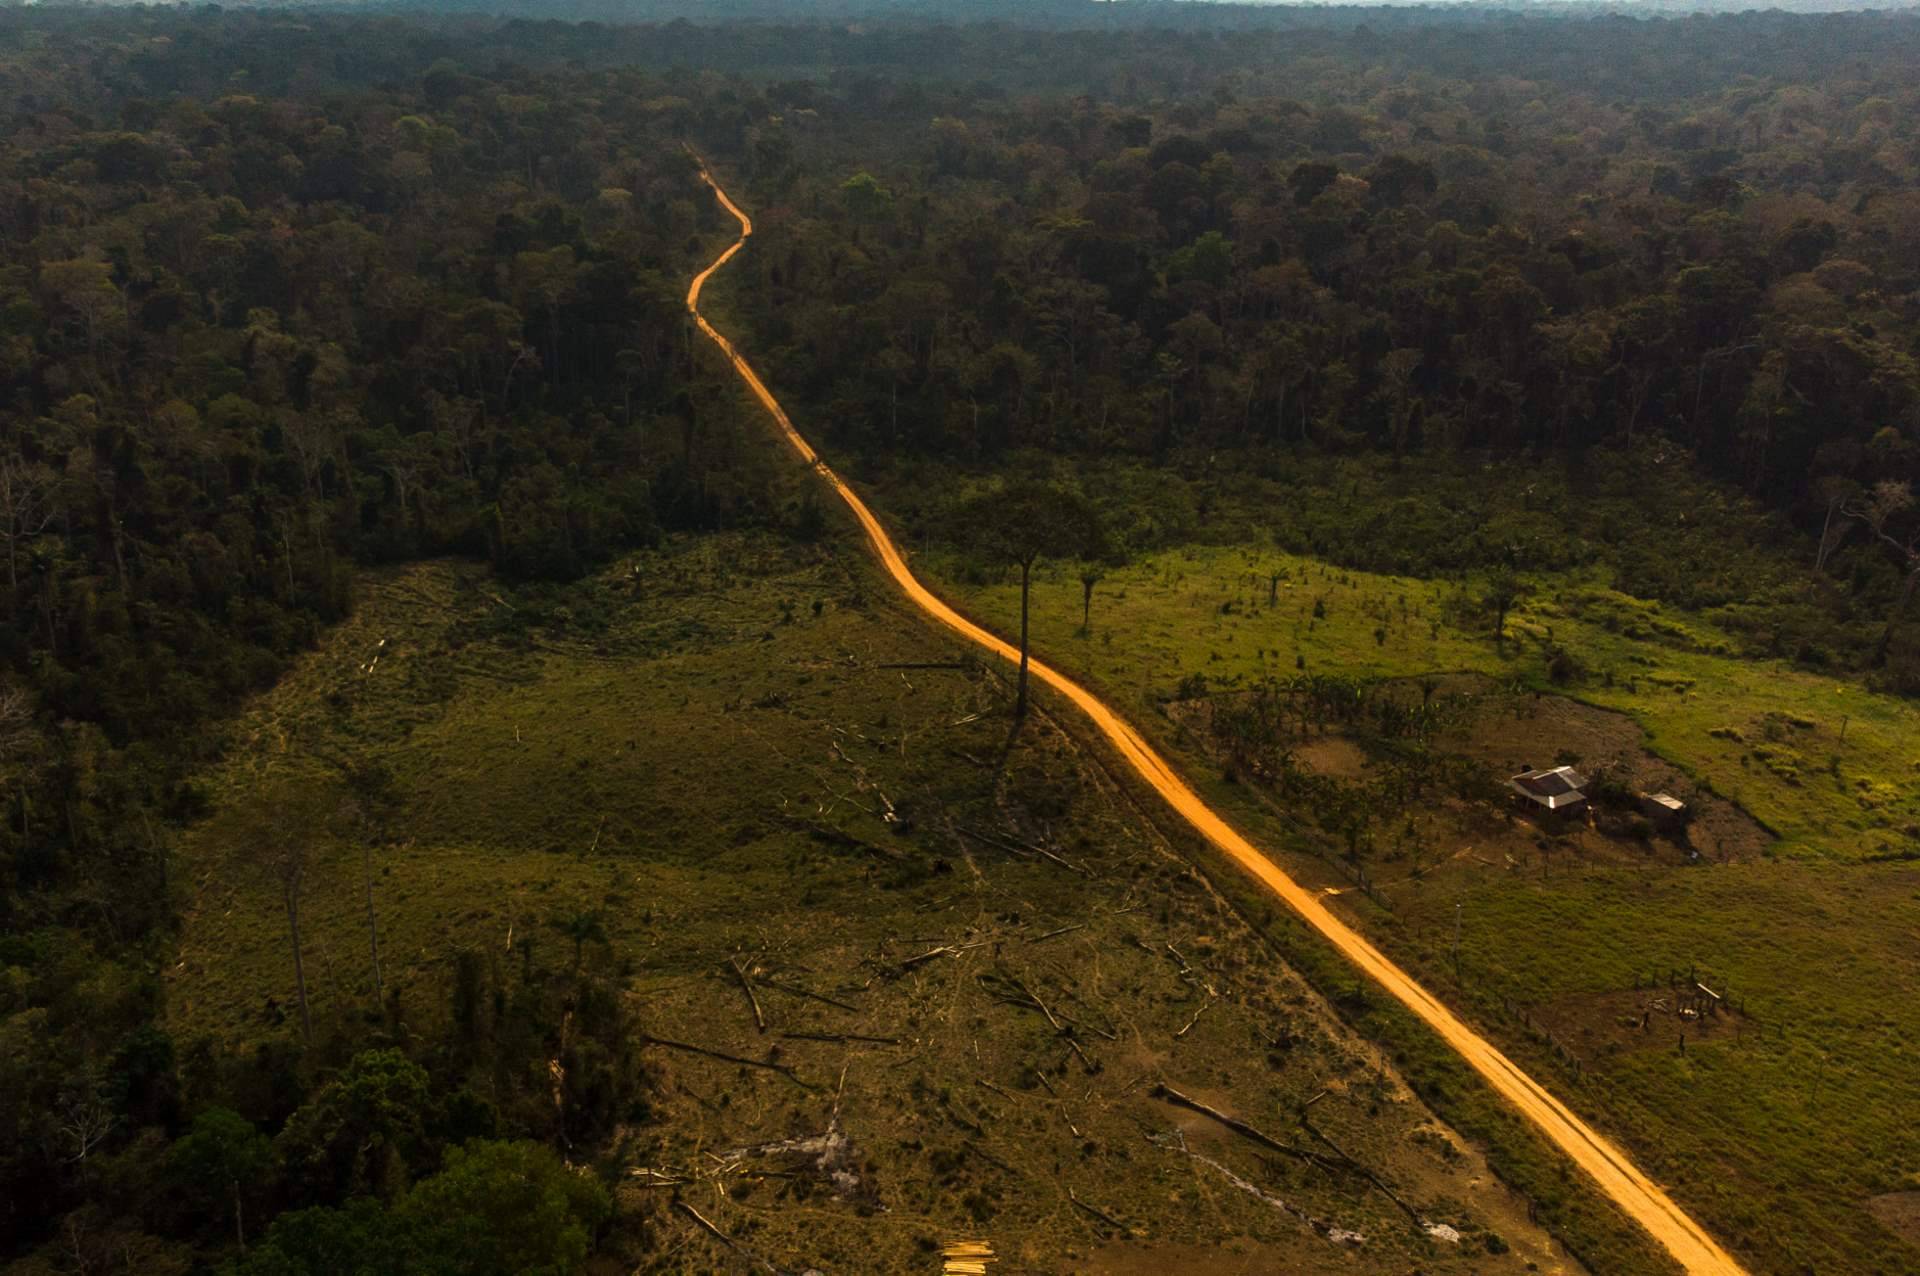 Contraditoriamente, interesse no mercado de carbono vem ressuscitando conflitos agrários na Amazônia